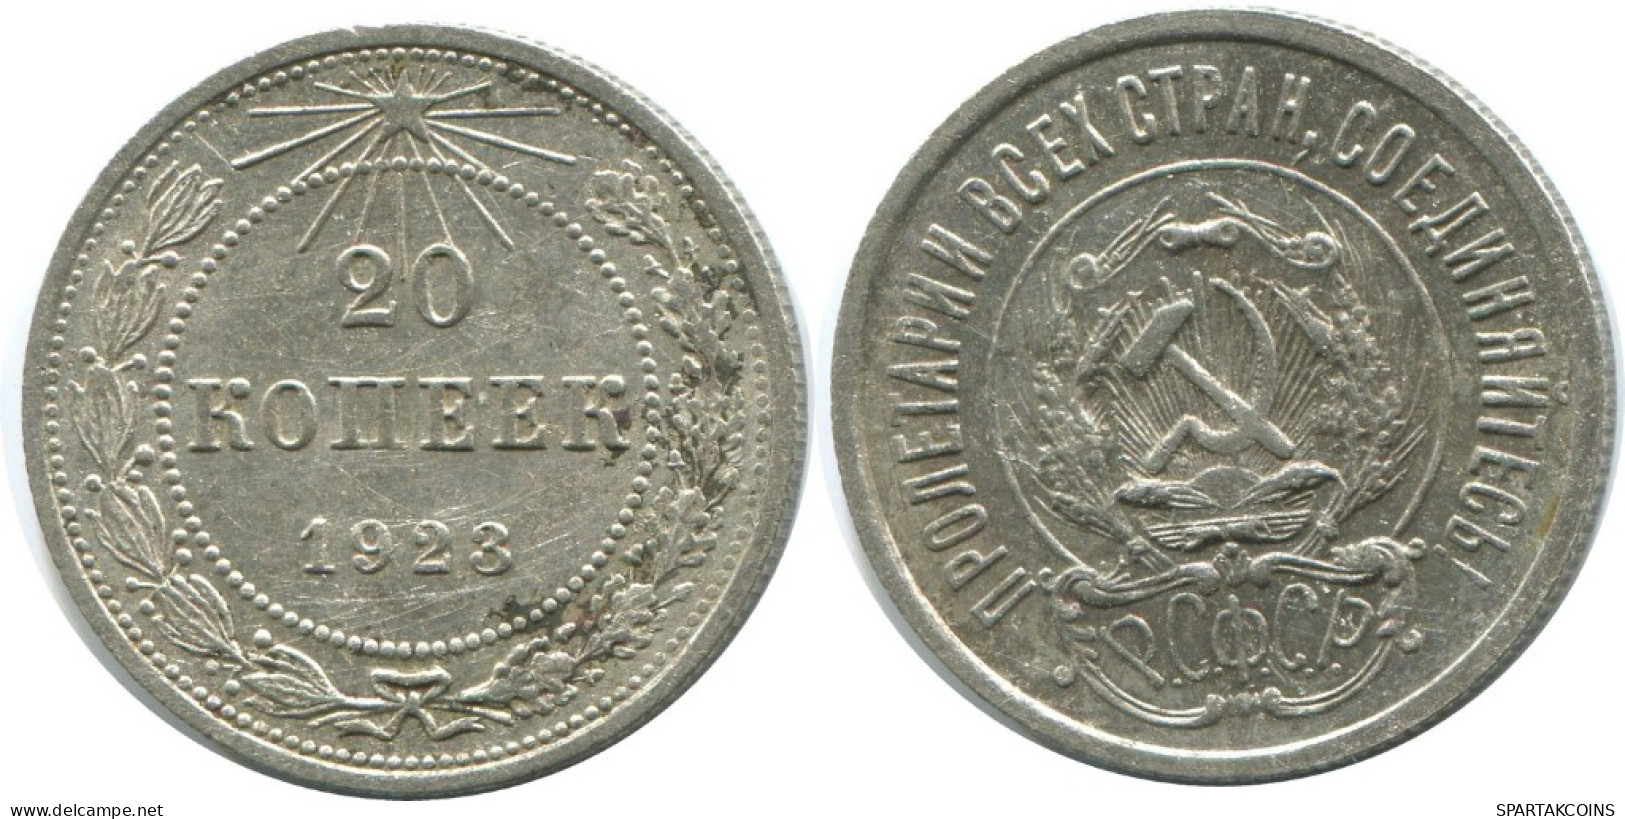 20 KOPEKS 1923 RUSSIA RSFSR SILVER Coin HIGH GRADE #AF608.U.A - Rusland